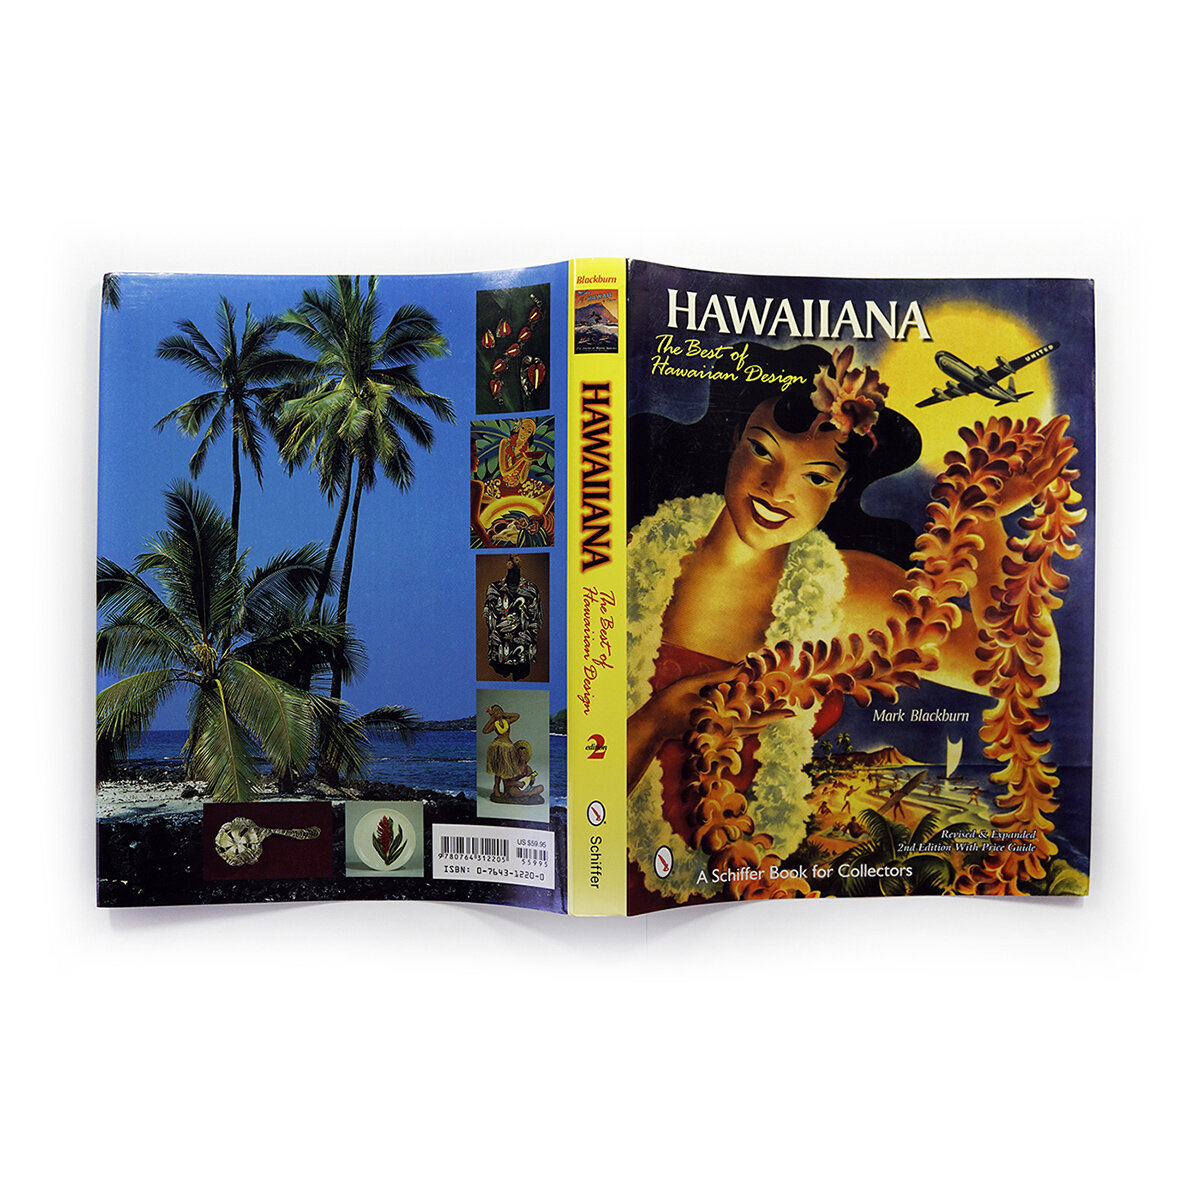 Hawaiiana - The Best of Hawaiian Design — Art Blackburn